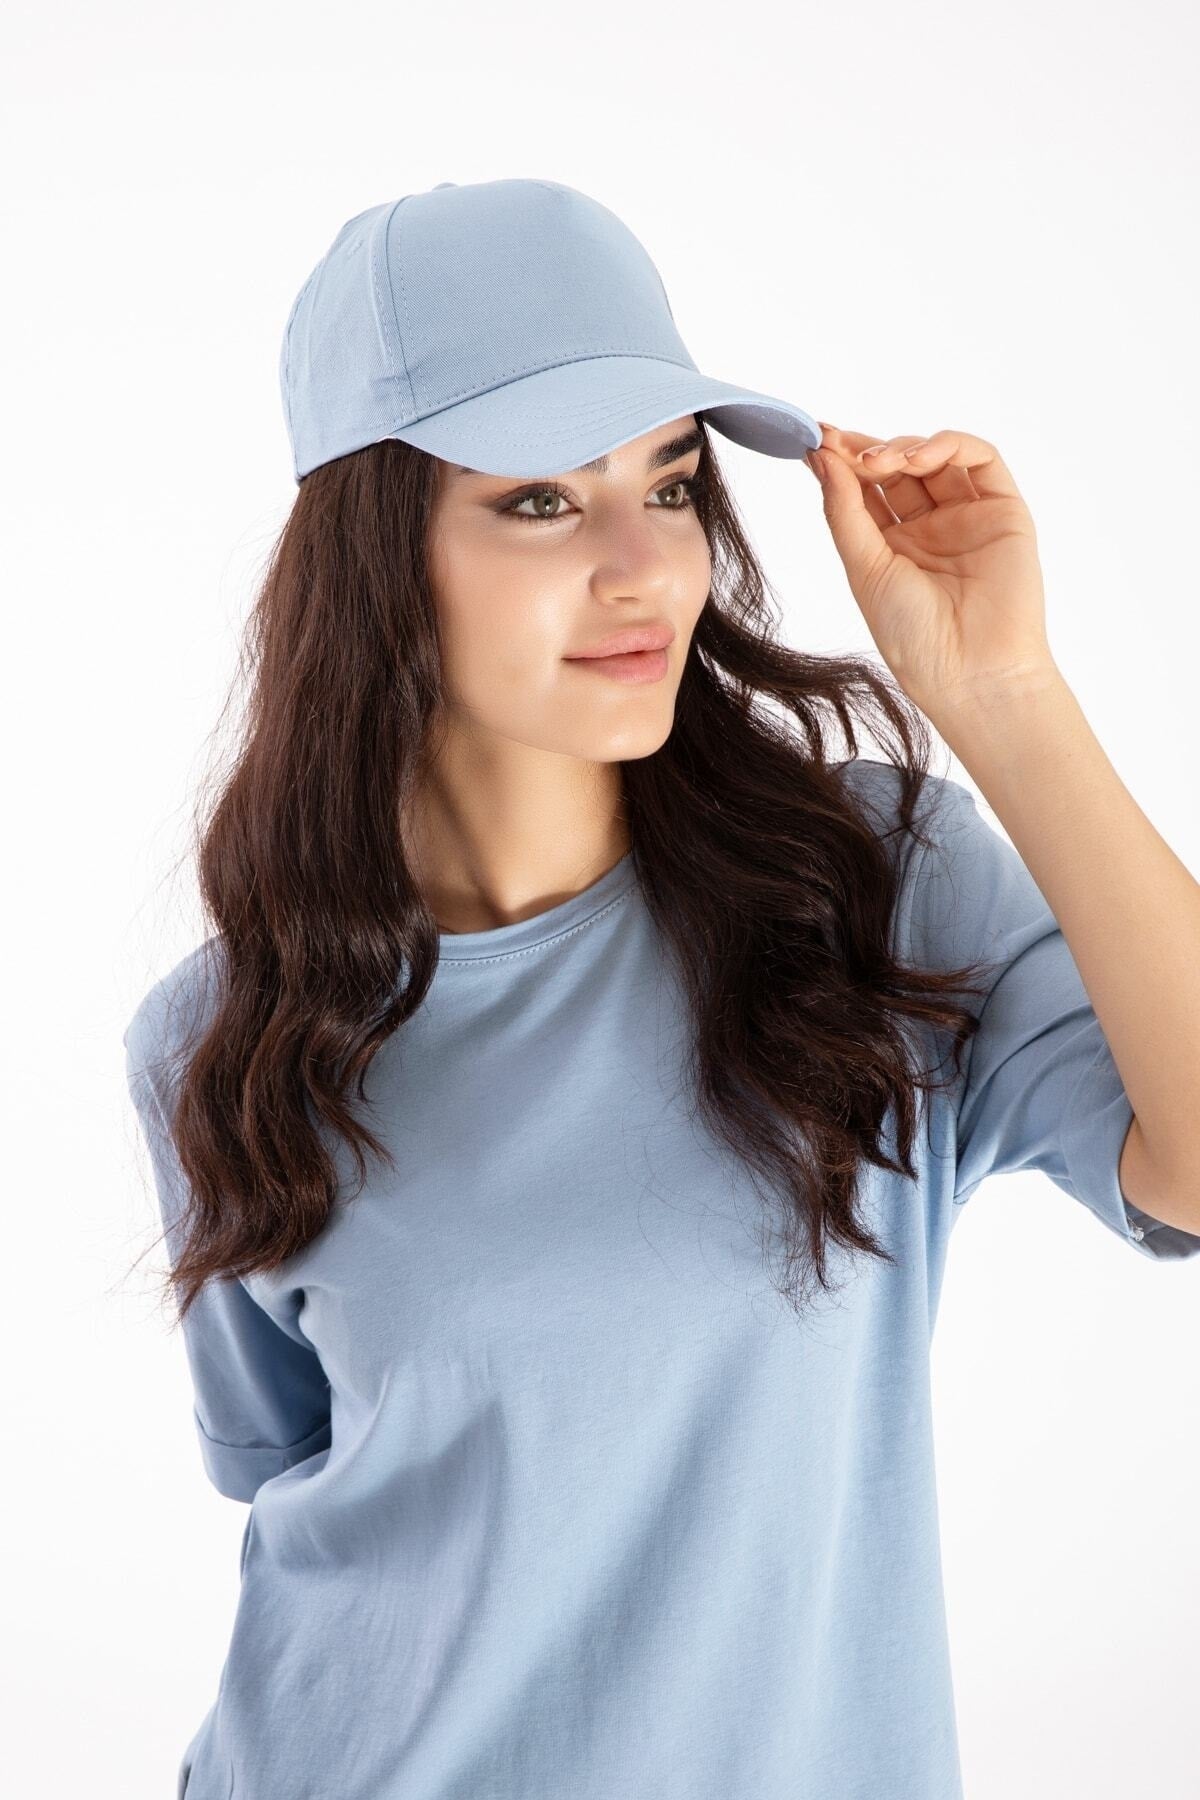 Velcro Back Adjustable Men's-Women's Plain Sports Hat Baby Blue Ladycolor